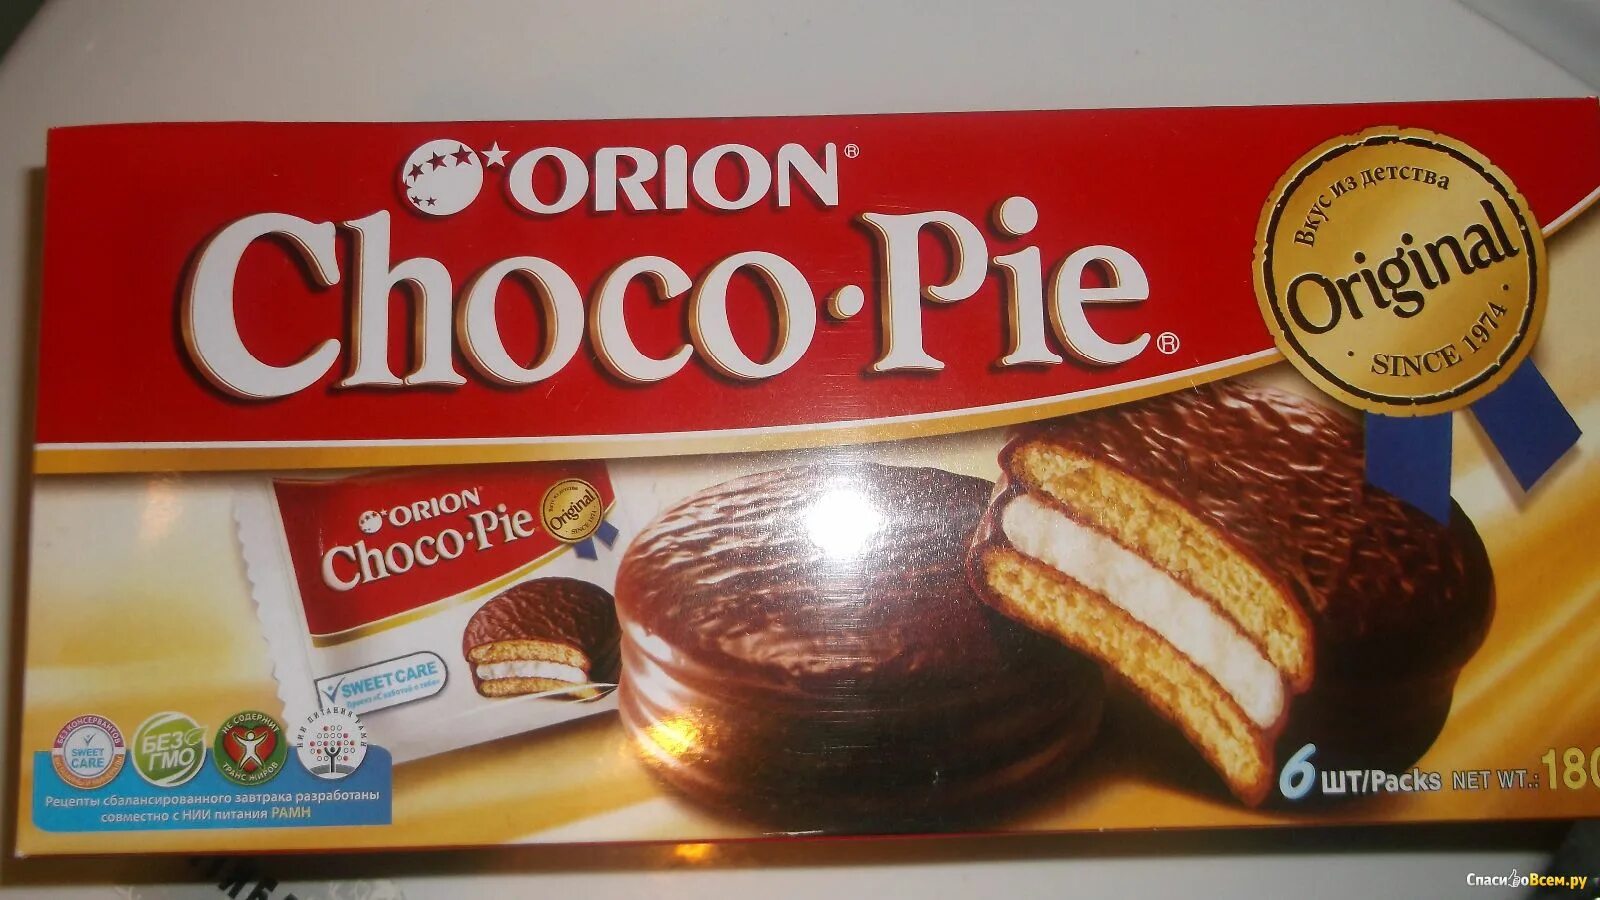 Орион чокопай вес 1 шт. Бисквит Orion "Choco pie" 4шт. Чоко Пай вес 1 шт. Коробка Чоко Пай.